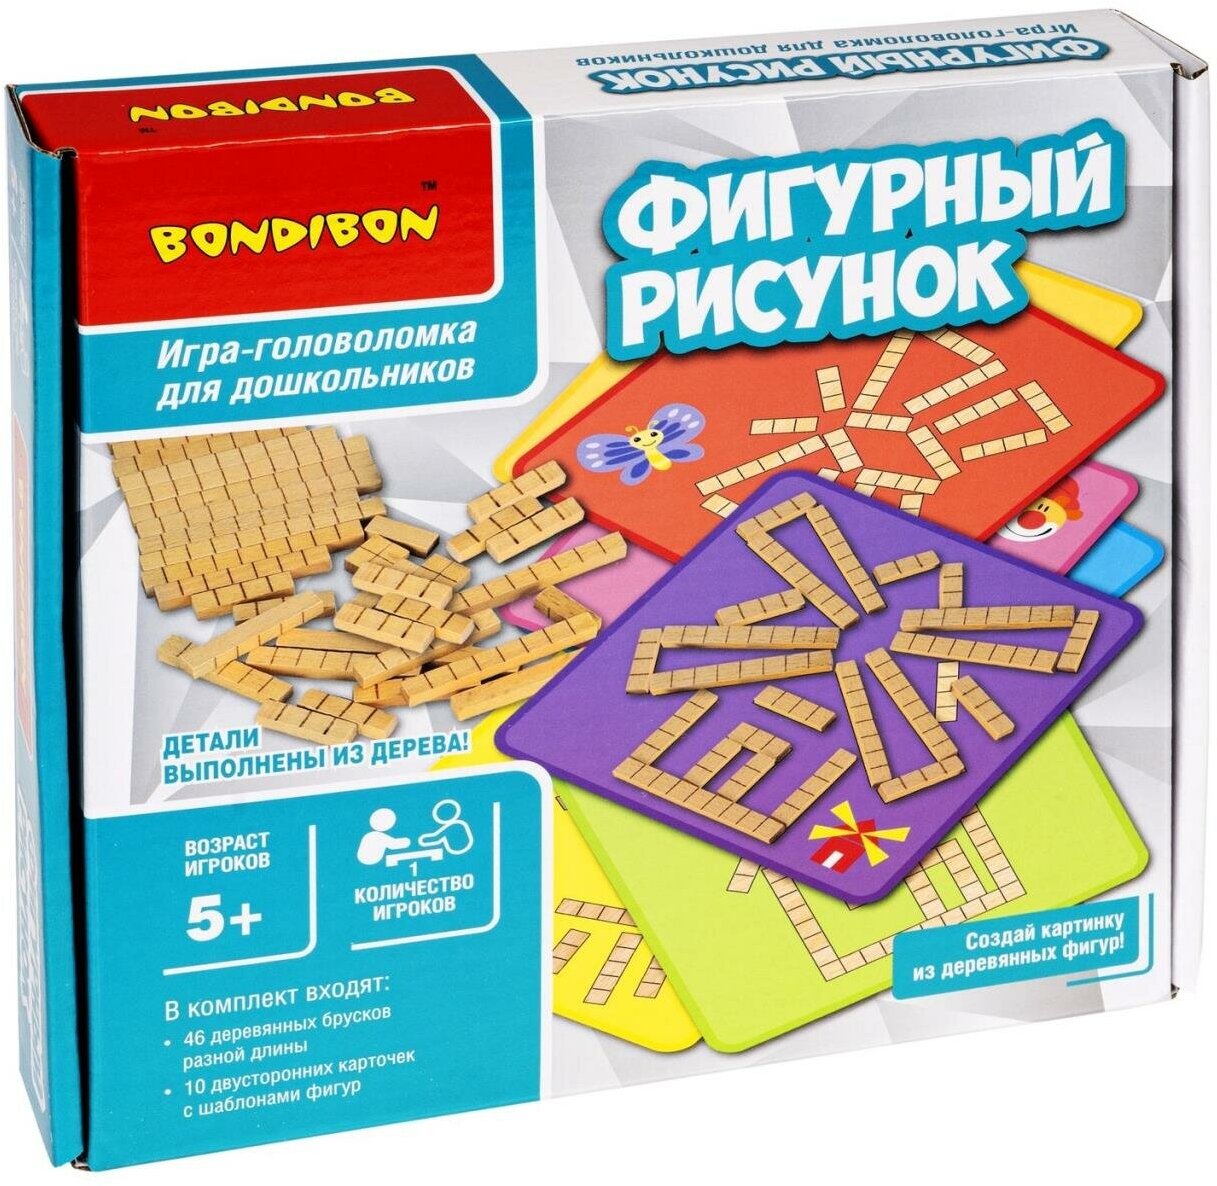 Игра-головоломка для дошкольников Bondibon "фигурный рисунок", Box